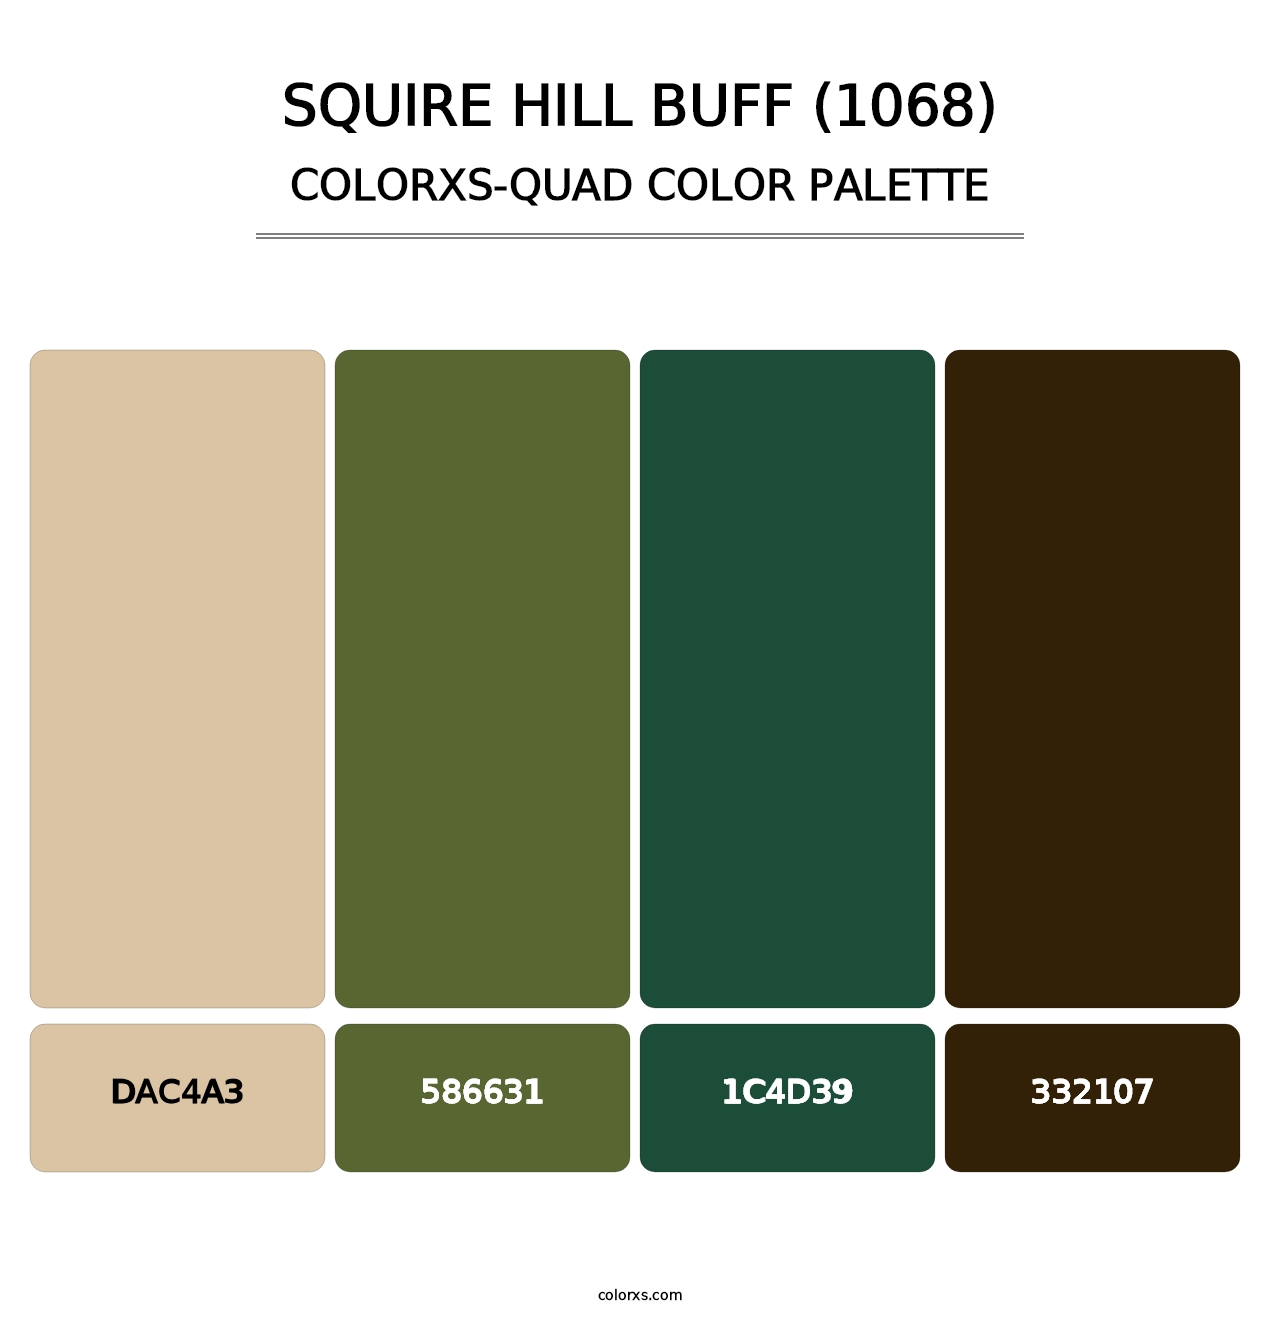 Squire Hill Buff (1068) - Colorxs Quad Palette